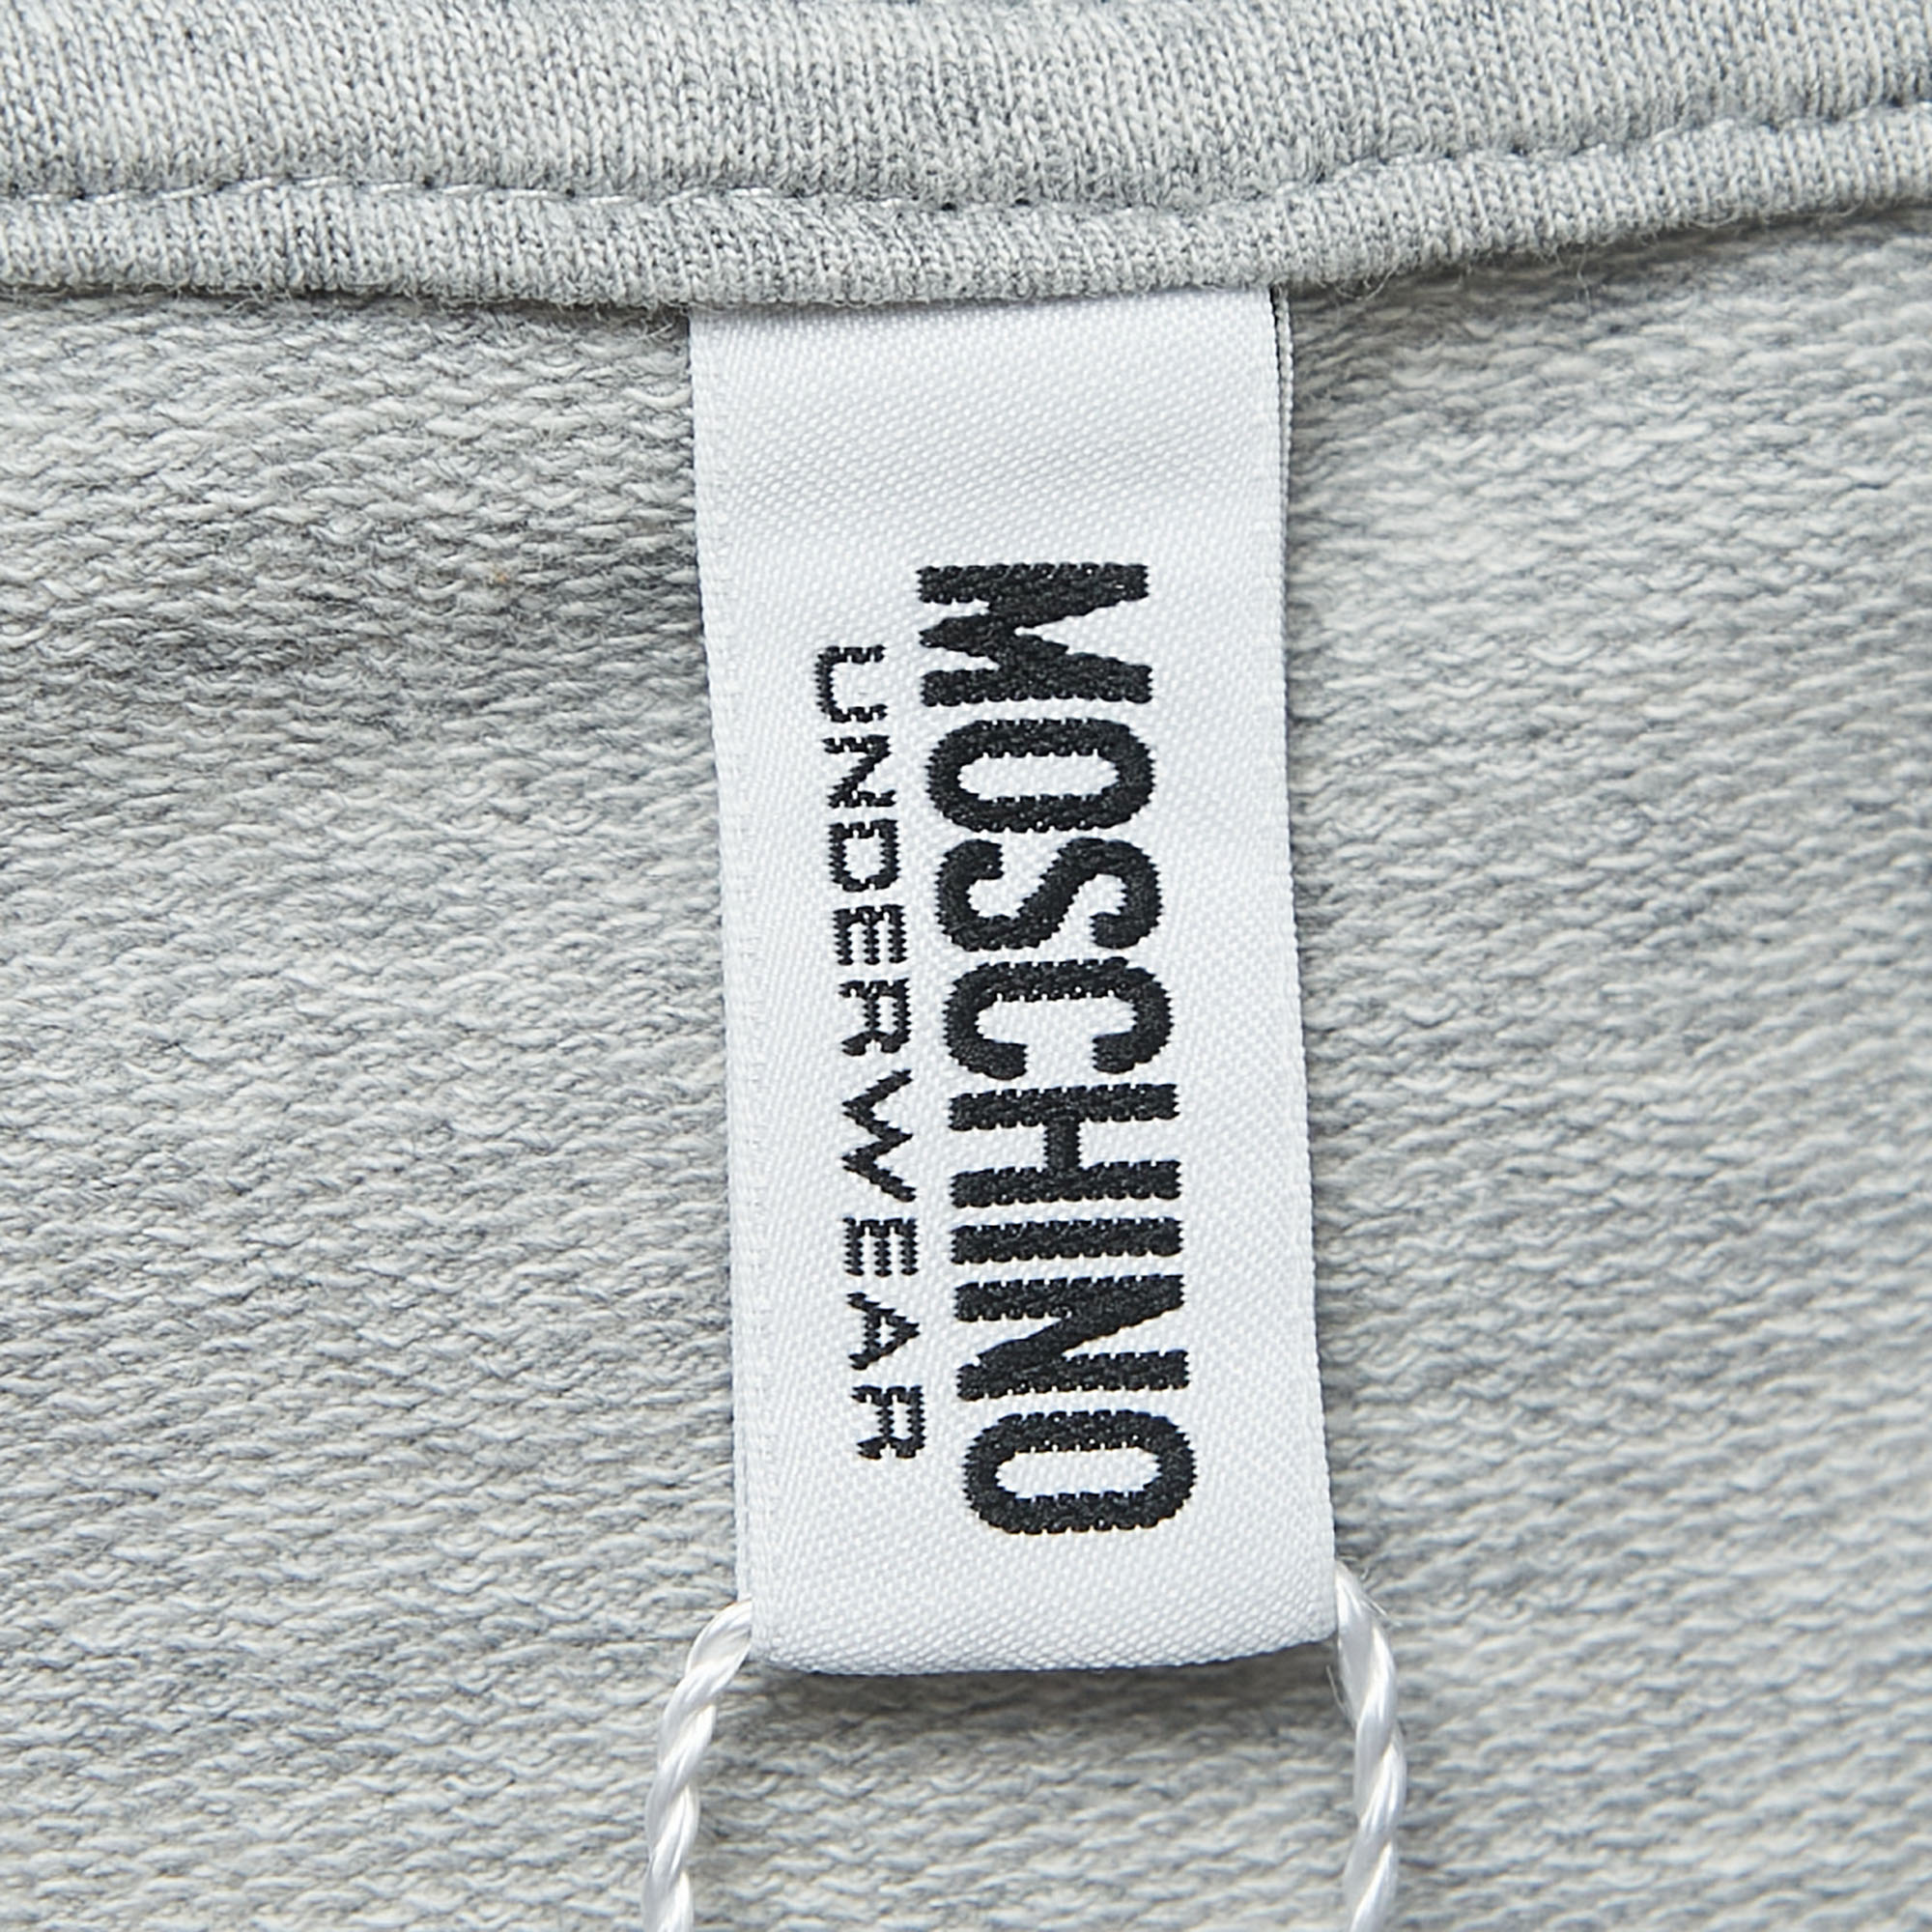 Moschino Underwear Grey Cotton Logo Tape Detail Crew Neck Sweatshirt M